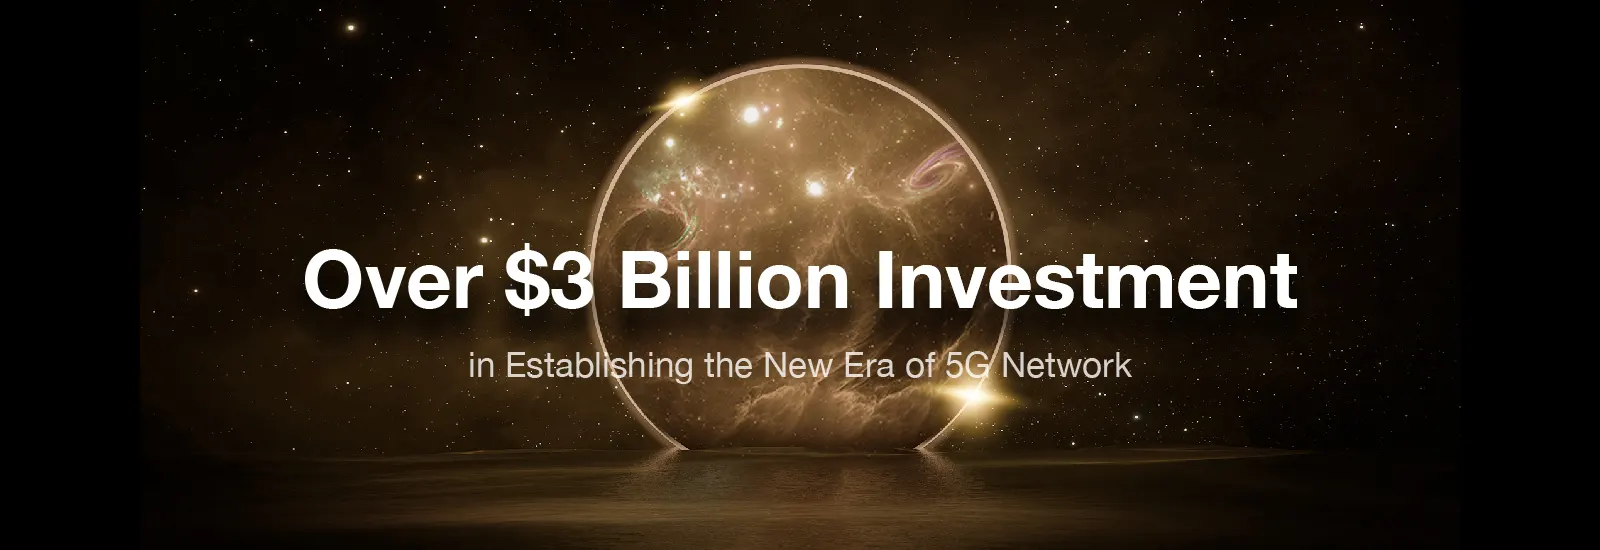 Over $3 billion inverstment in establishing the new era of 5G network.